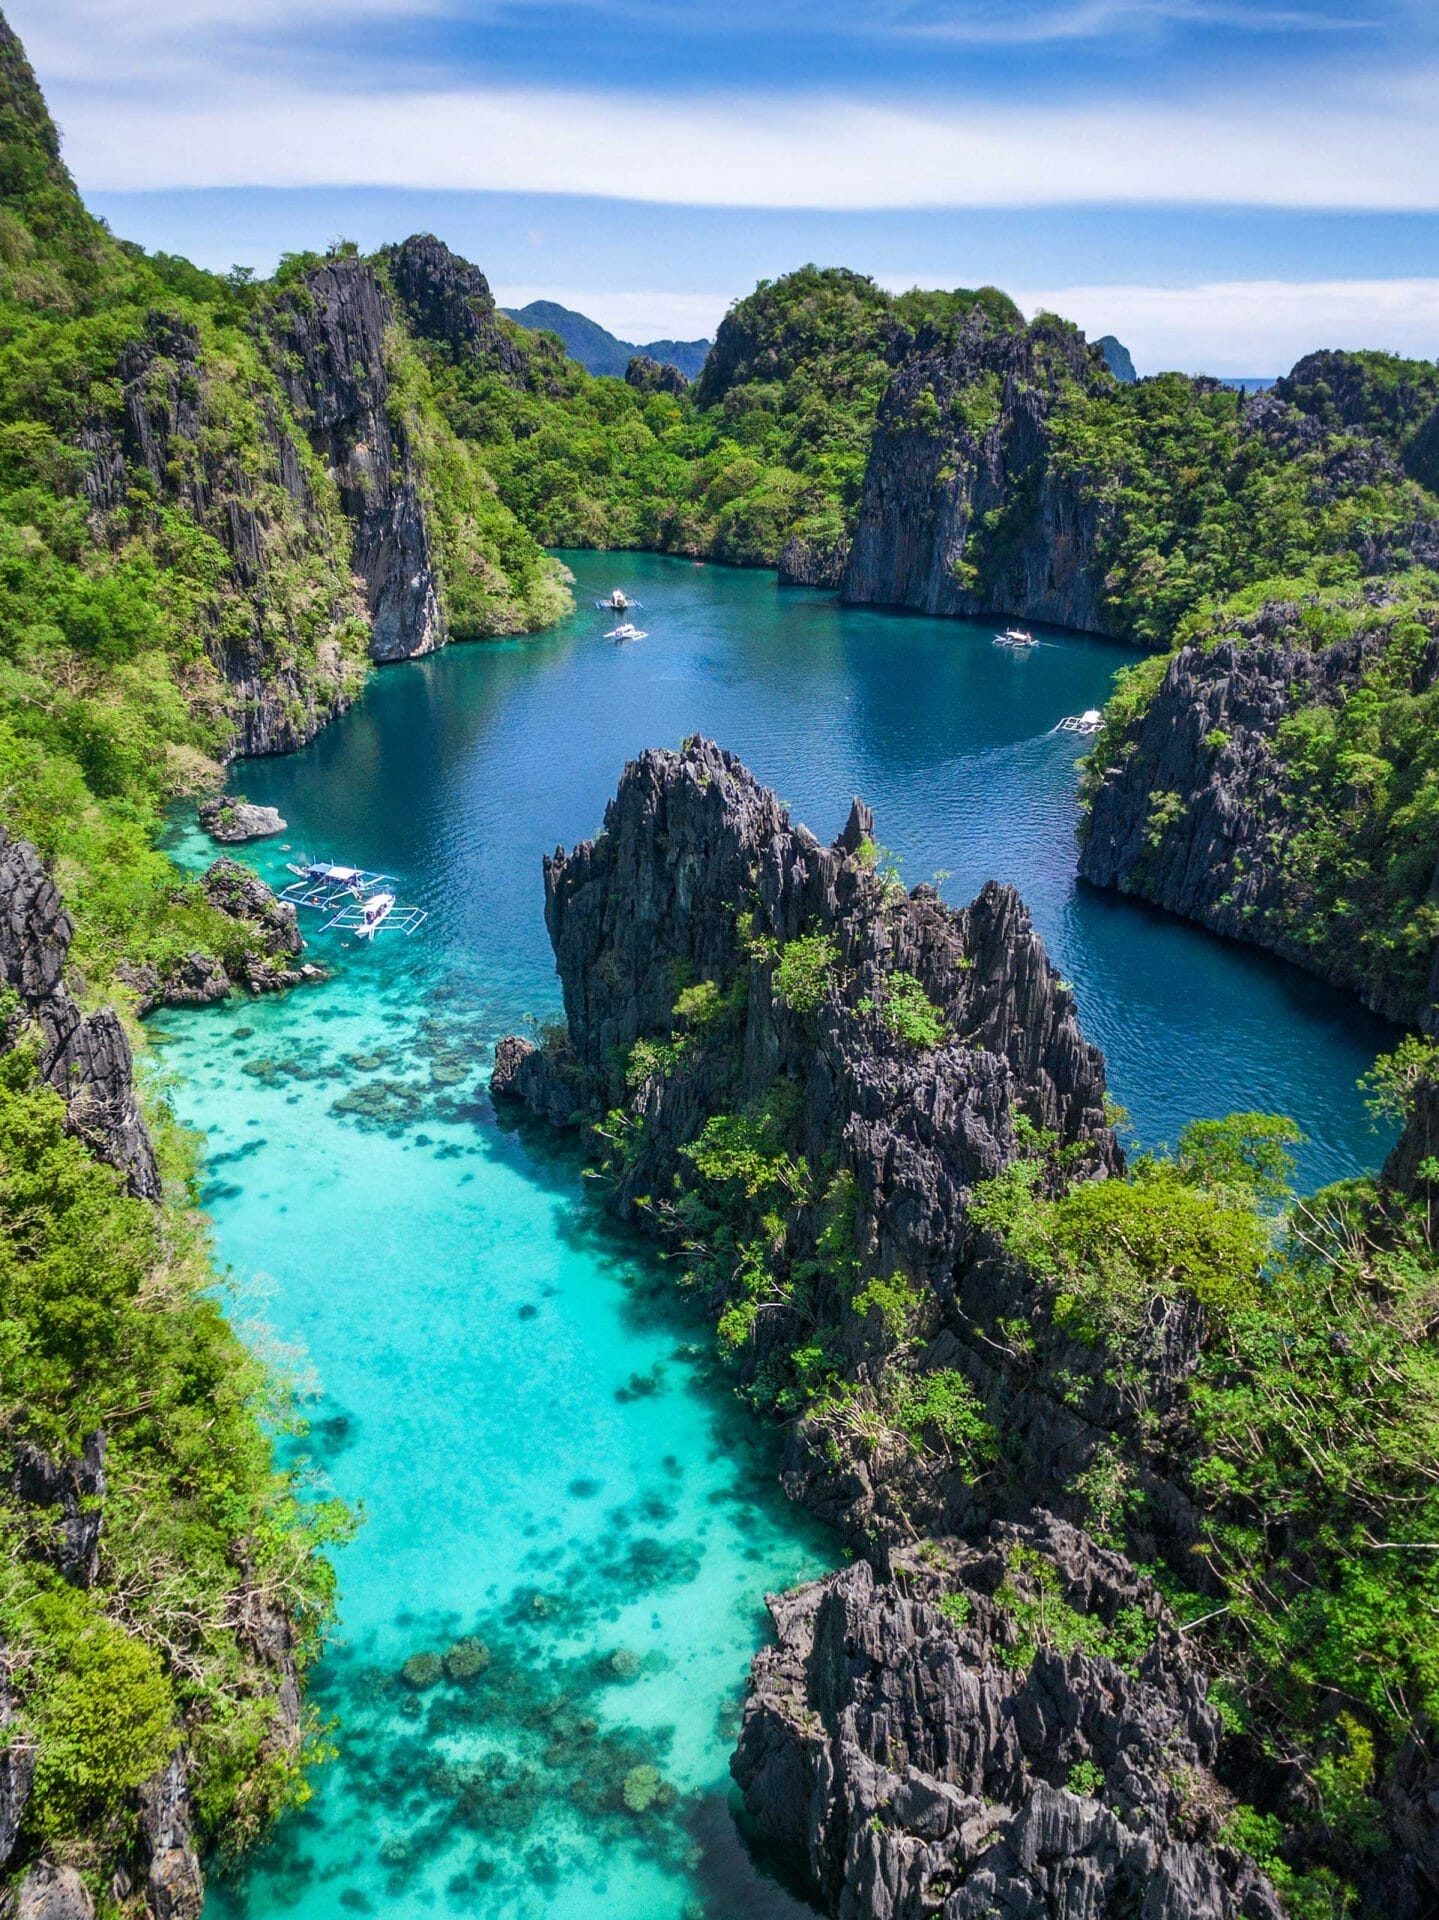 Filipinas Palawan